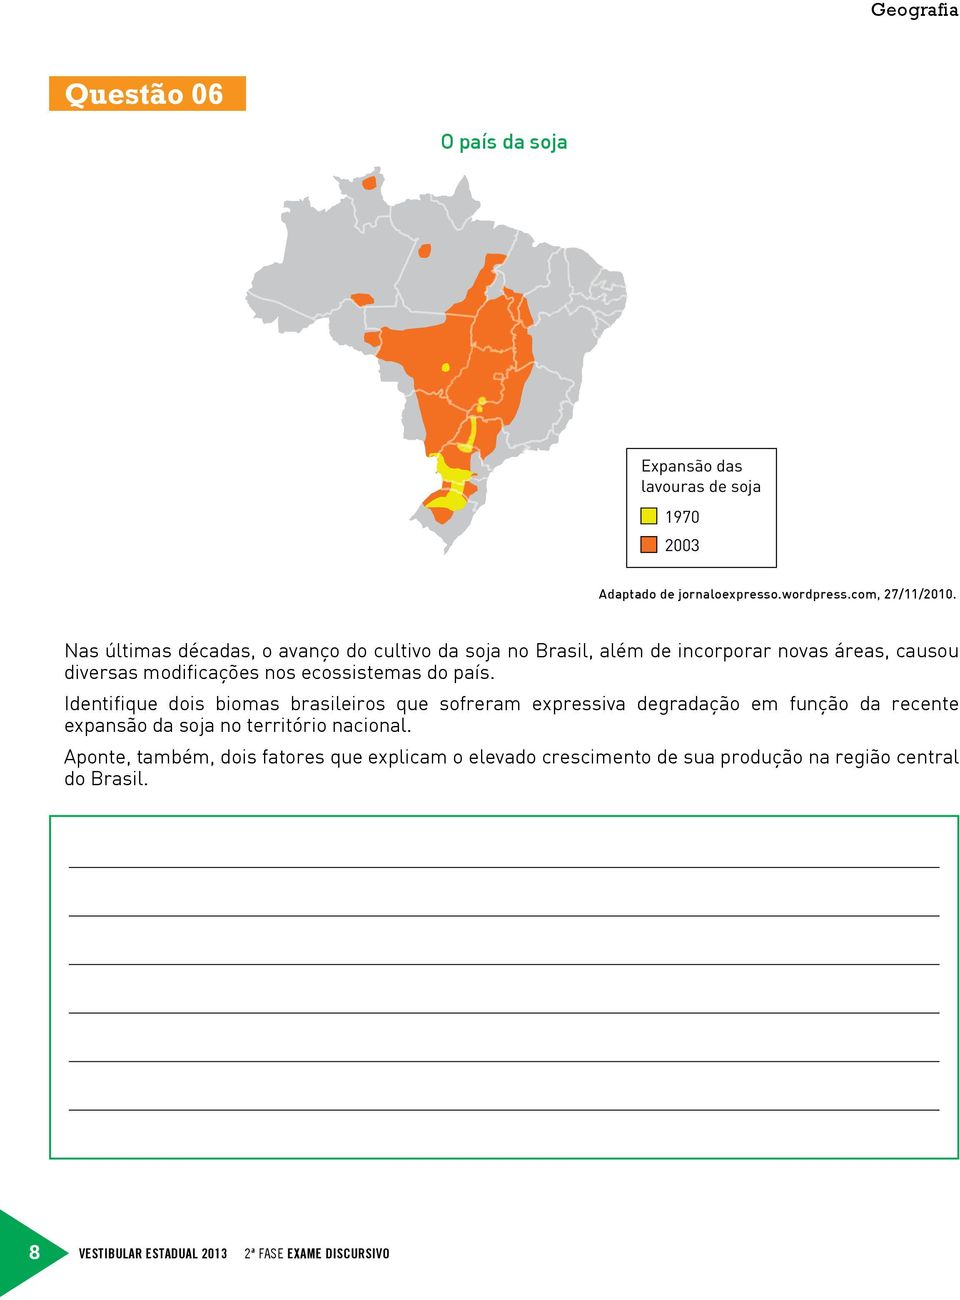 país. Identifique dois biomas brasileiros que sofreram expressiva degradação em função da recente expansão da soja no território nacional.